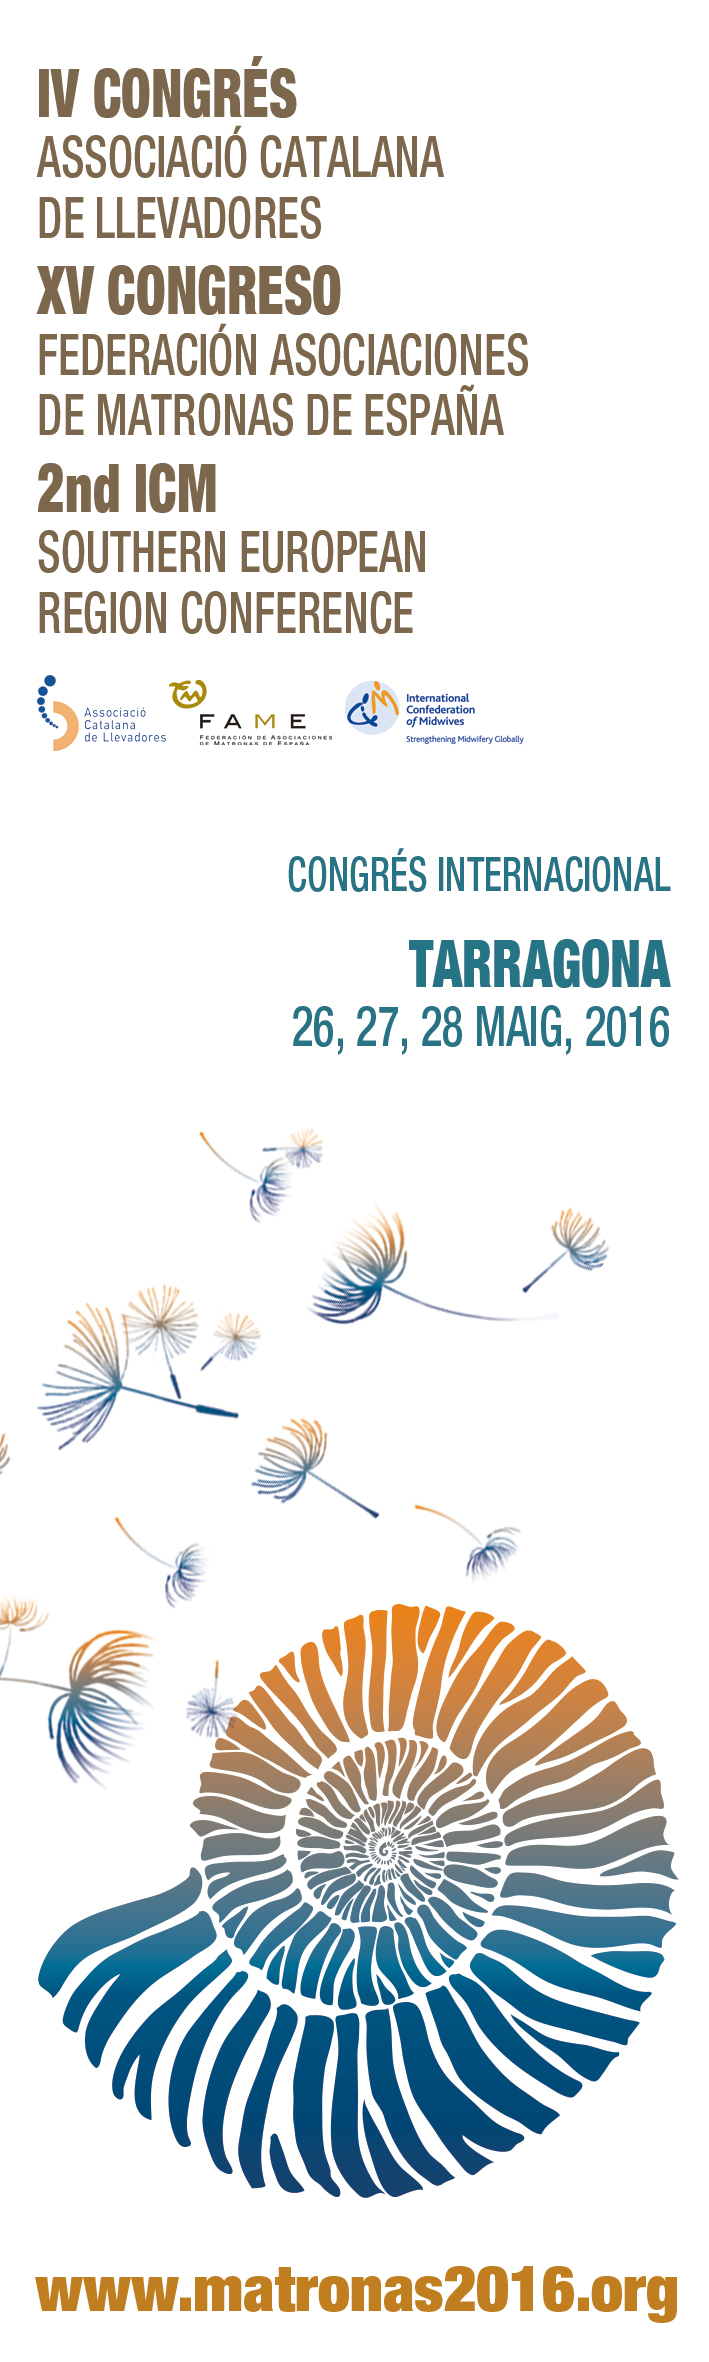 congrés internacional de llevadores Tarragona - Tarragona 2016 - punt de llibre